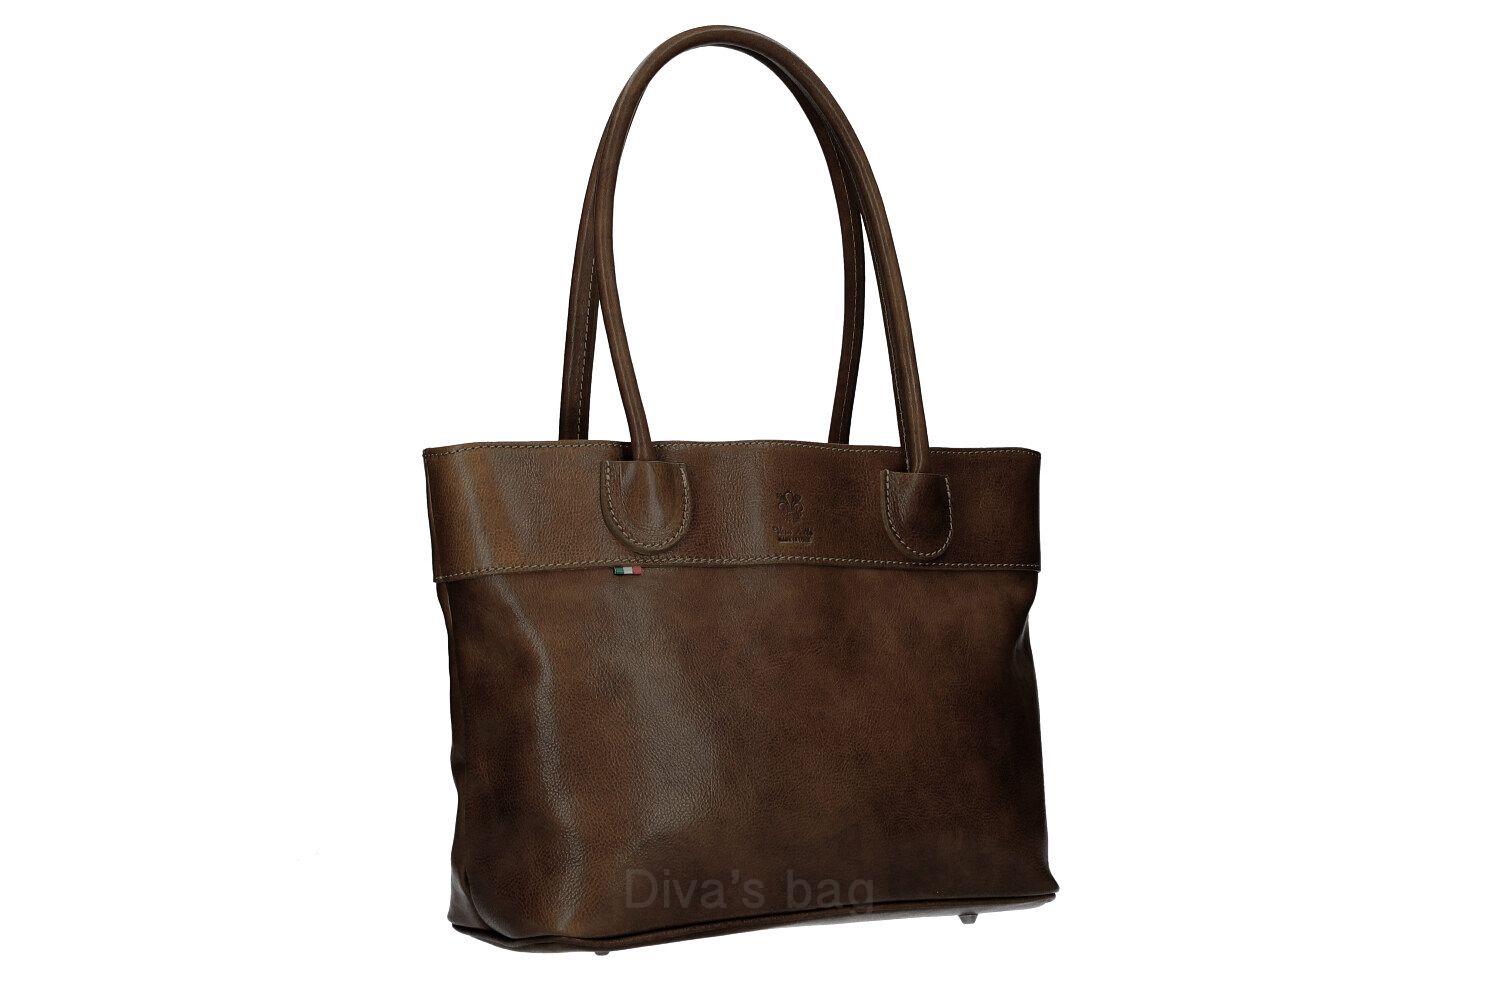 Mable - Leather shoulder bag